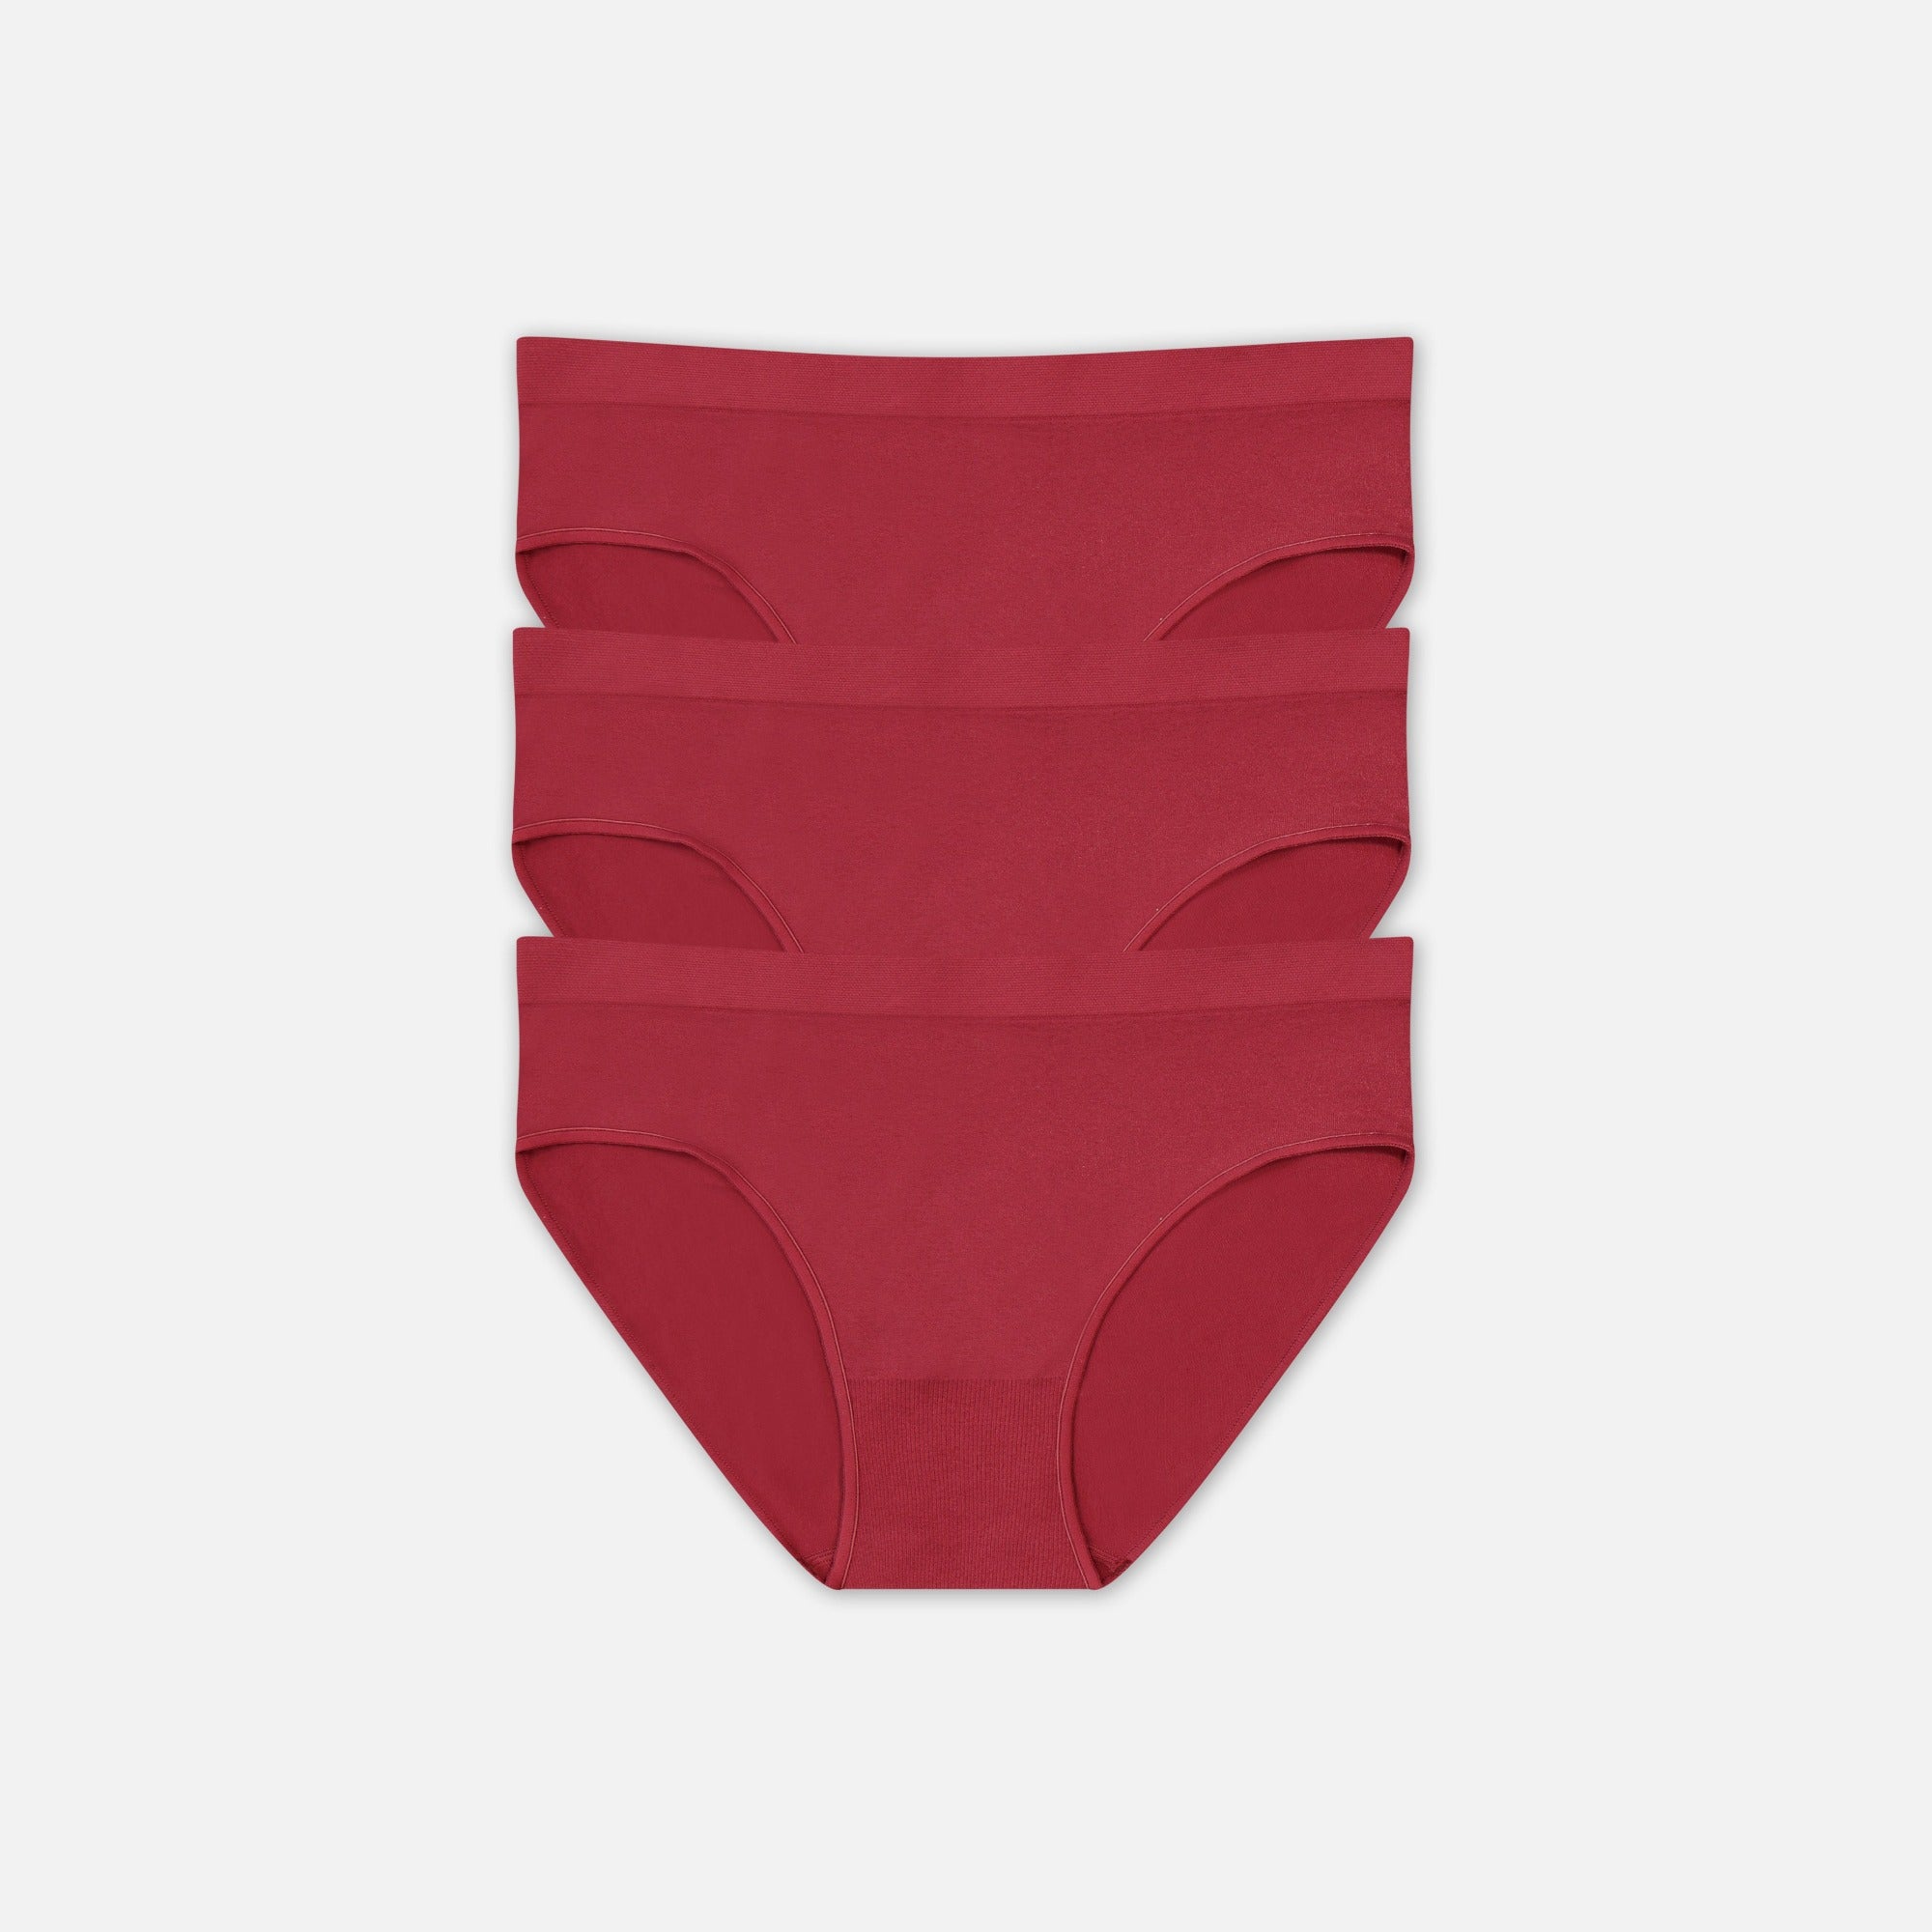 Happy Underwear Day! 🩲 - Underoutfit